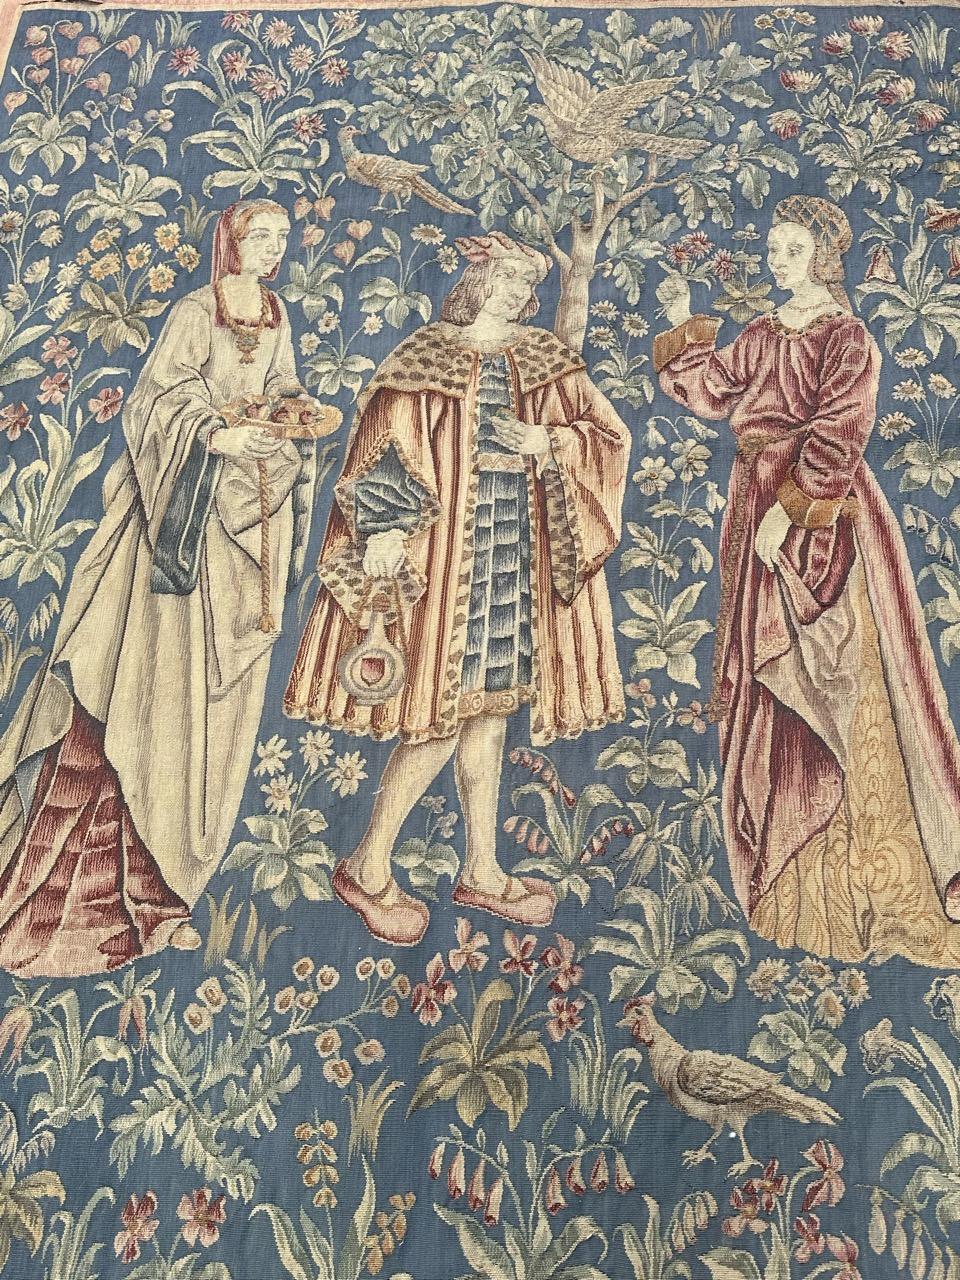 Très belle tapisserie d'Aubusson avec un beau dessin reprenant une partie du dessin d'une tapisserie médiévale du musée de Paris 